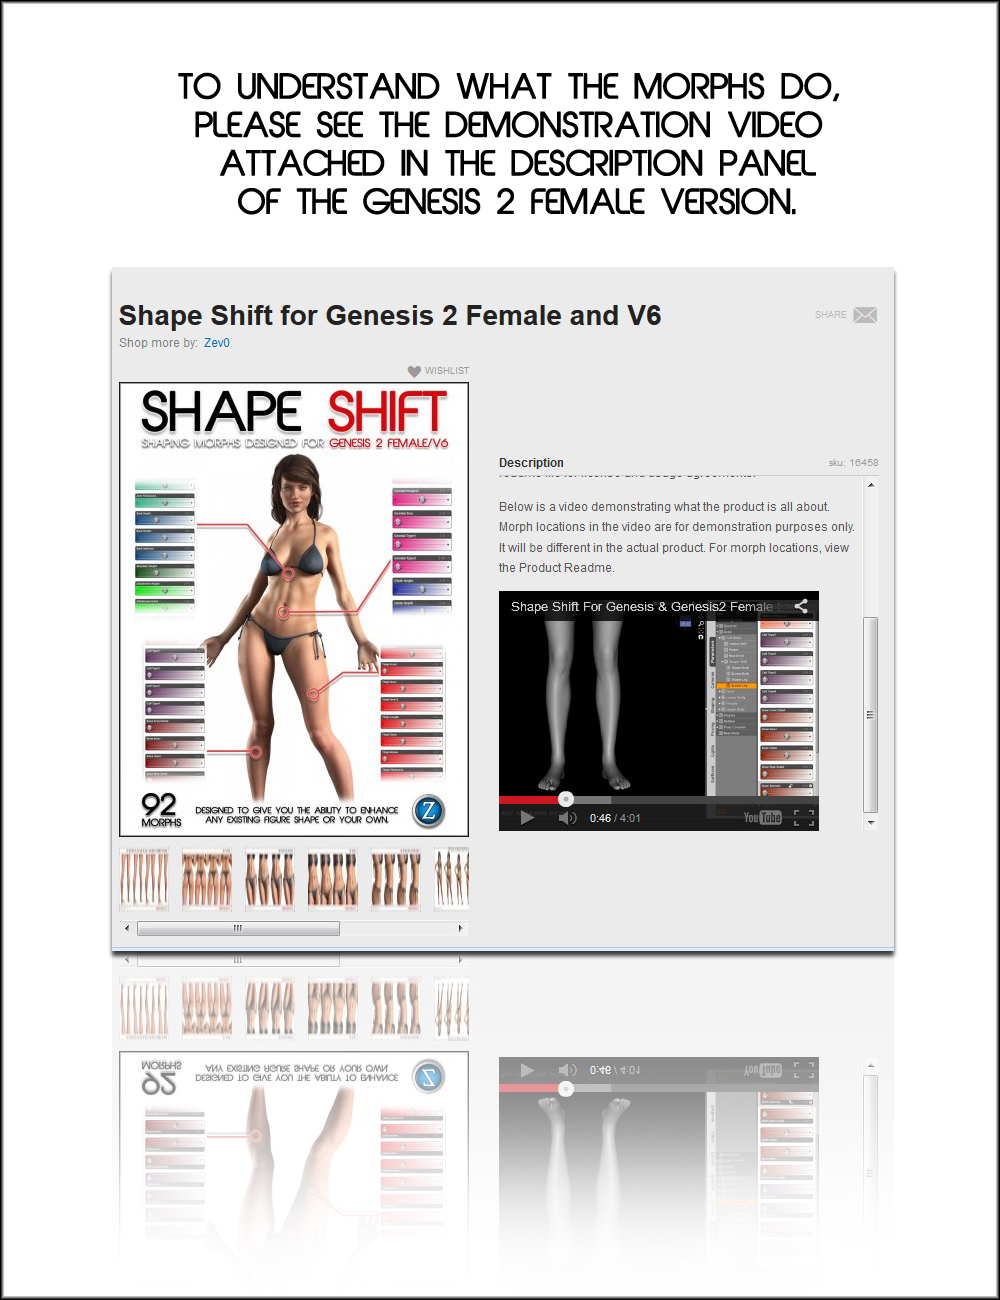 Shape Shift for Genesis 2 Male(s) / M6 by: Zev0, 3D Models by Daz 3D